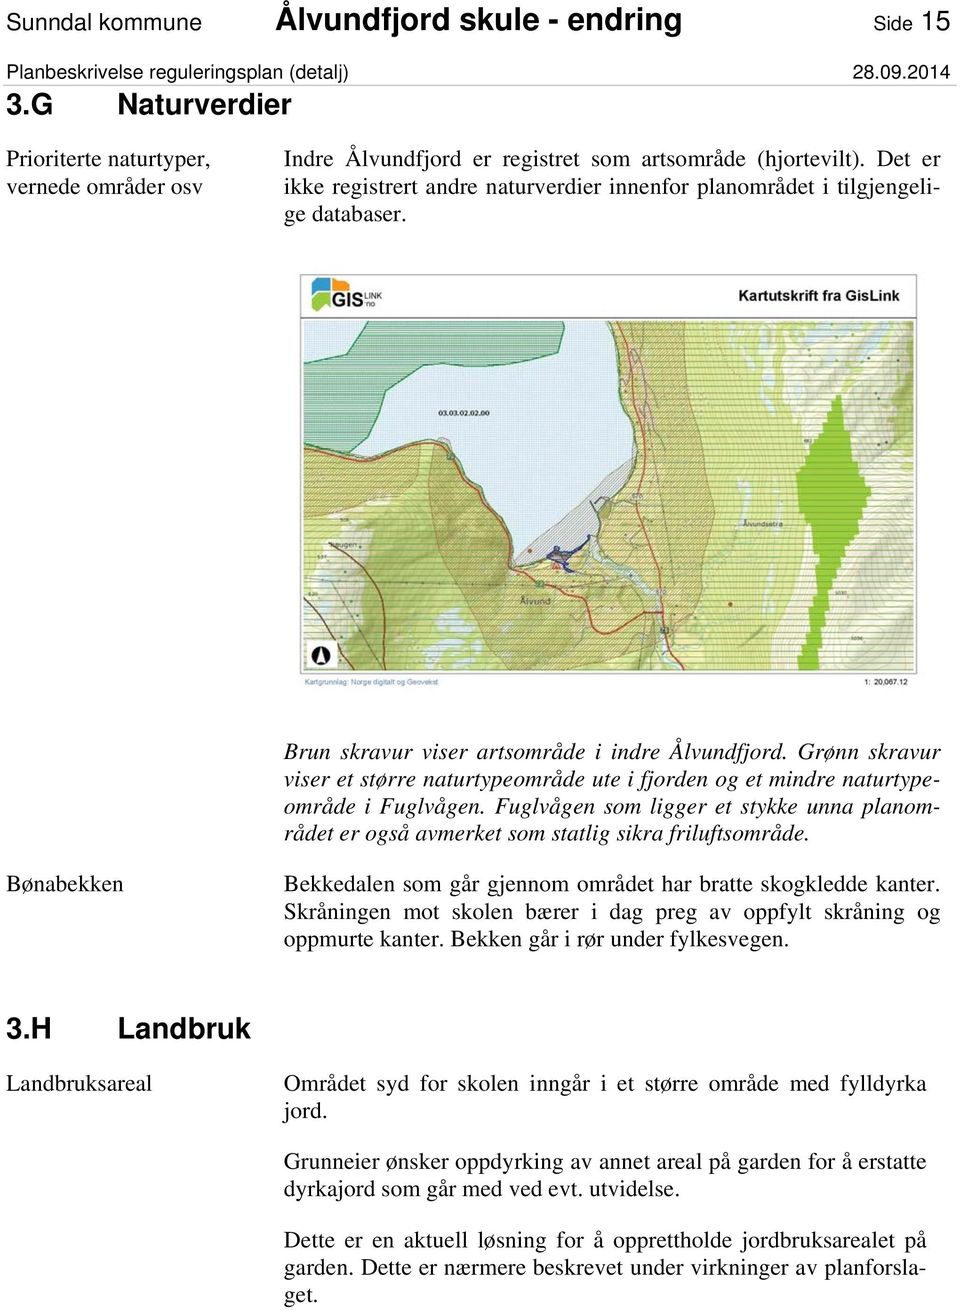 Grønn skravur viser et større naturtypeområde ute i fjorden og et mindre naturtypeområde i Fuglvågen. Fuglvågen som ligger et stykke unna planområdet er også avmerket som statlig sikra friluftsområde.